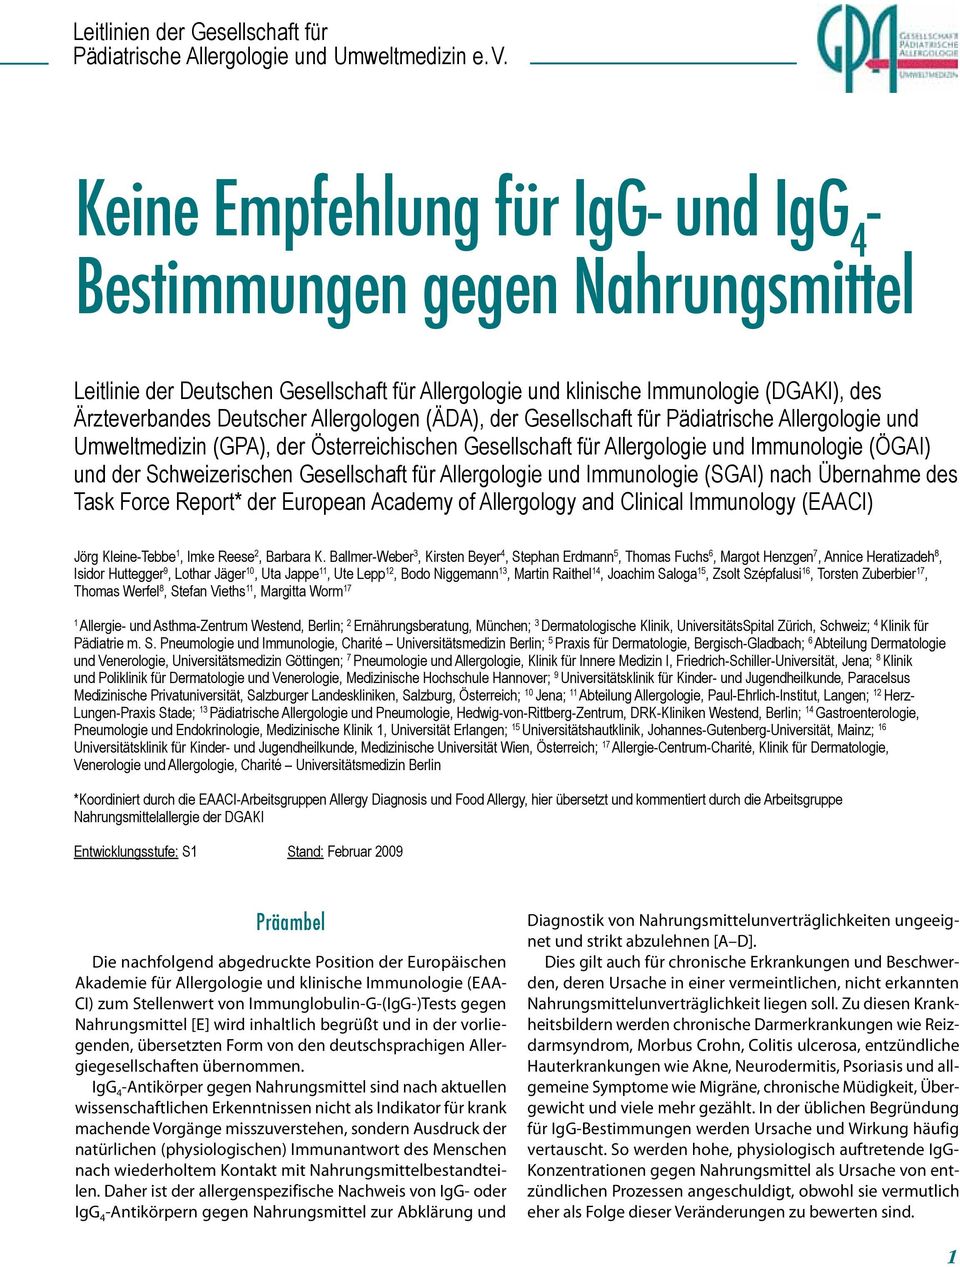 Allergologen (ÄDA), der Gesellschaft für Pädiatrische Allergologie und Umweltmedizin (GPA), der Österreichischen Gesellschaft für Allergologie und Immunologie (ÖGAI) und der Schweizerischen